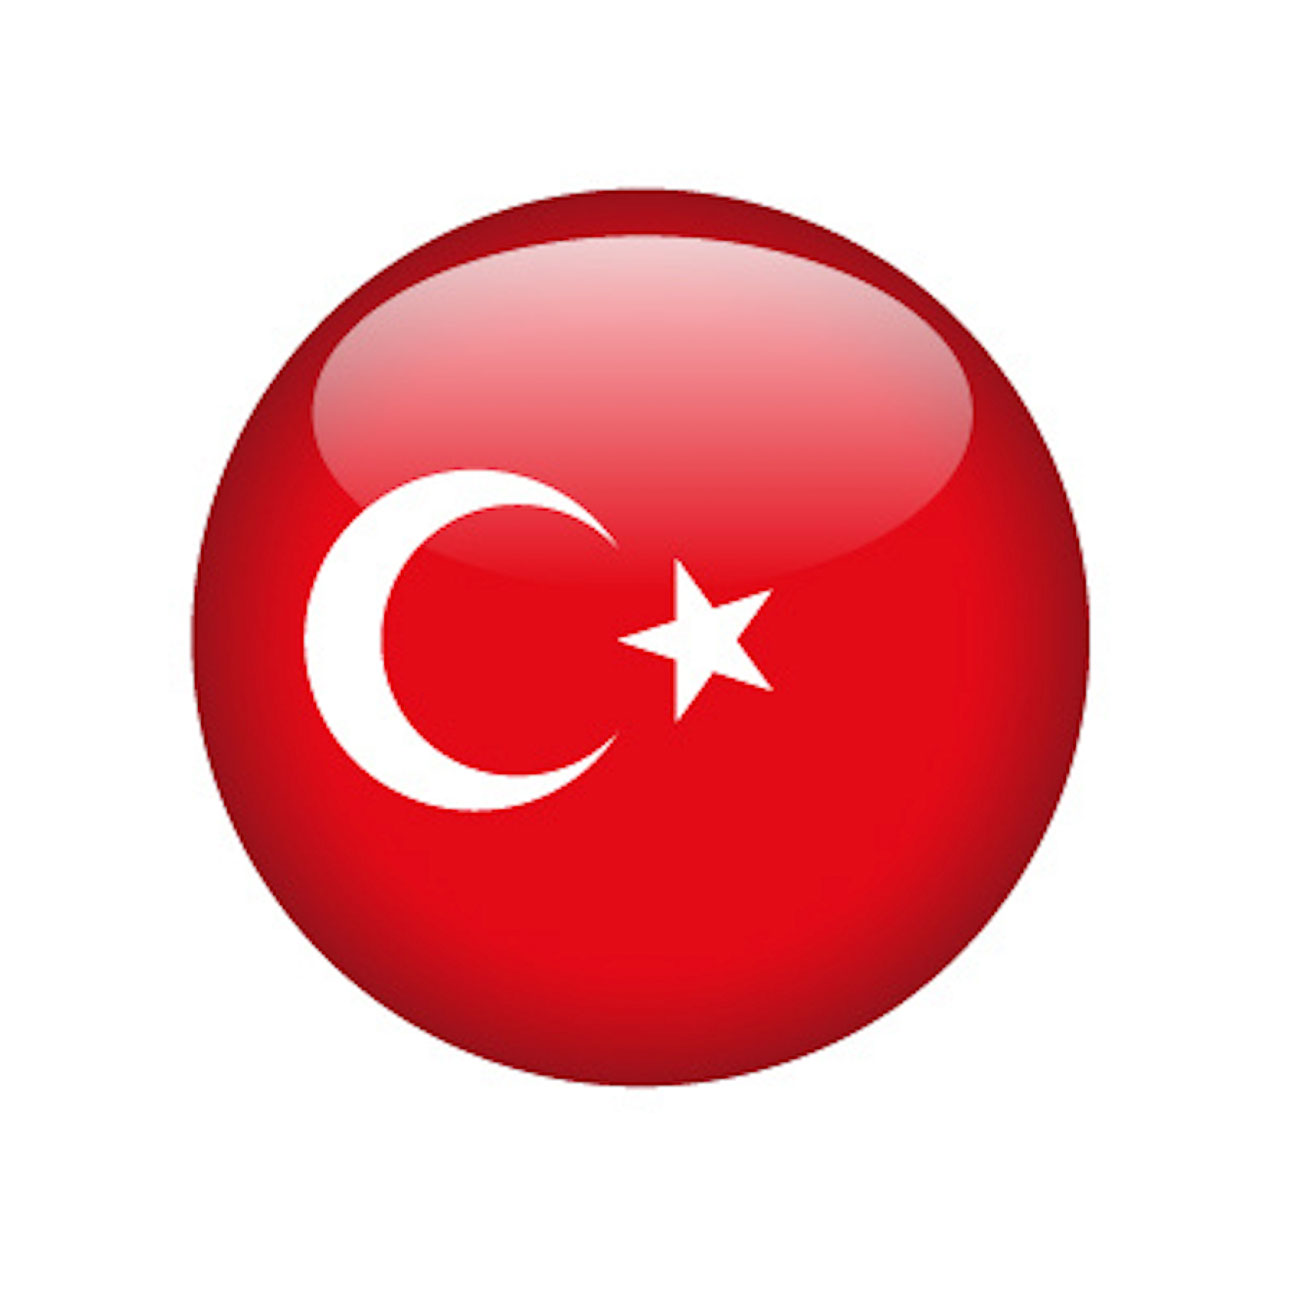 turkey country flag round icon